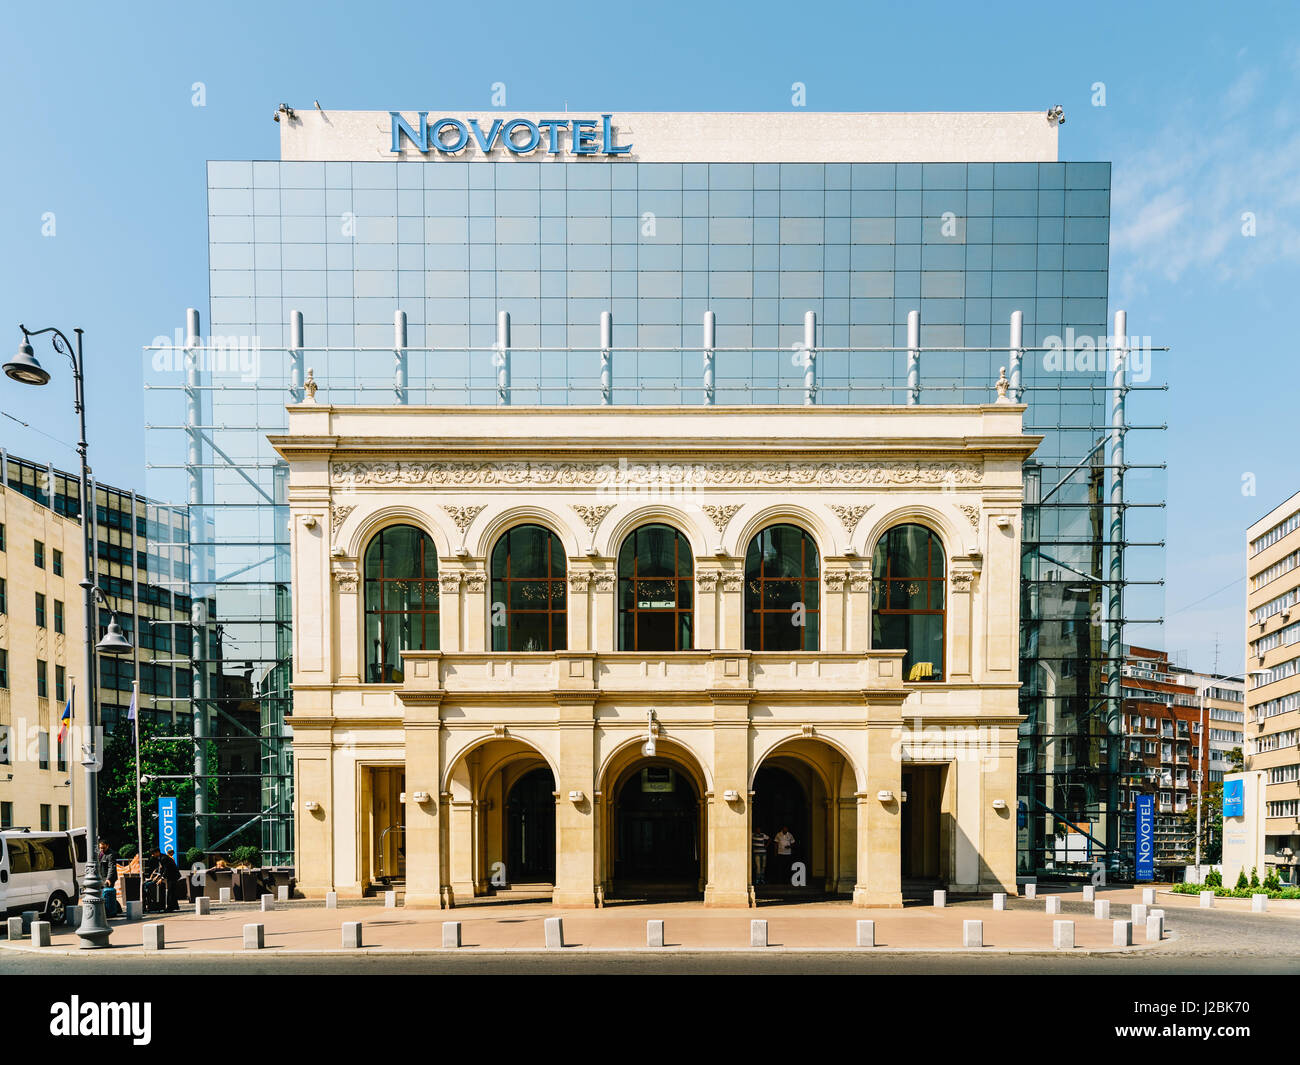 Bucarest, Romania - 06 Maggio 2015: Il Novotel si trova a metà scala hotel marchio del gruppo Accor situato nel distretto degli affari e il turista destinatio Foto Stock